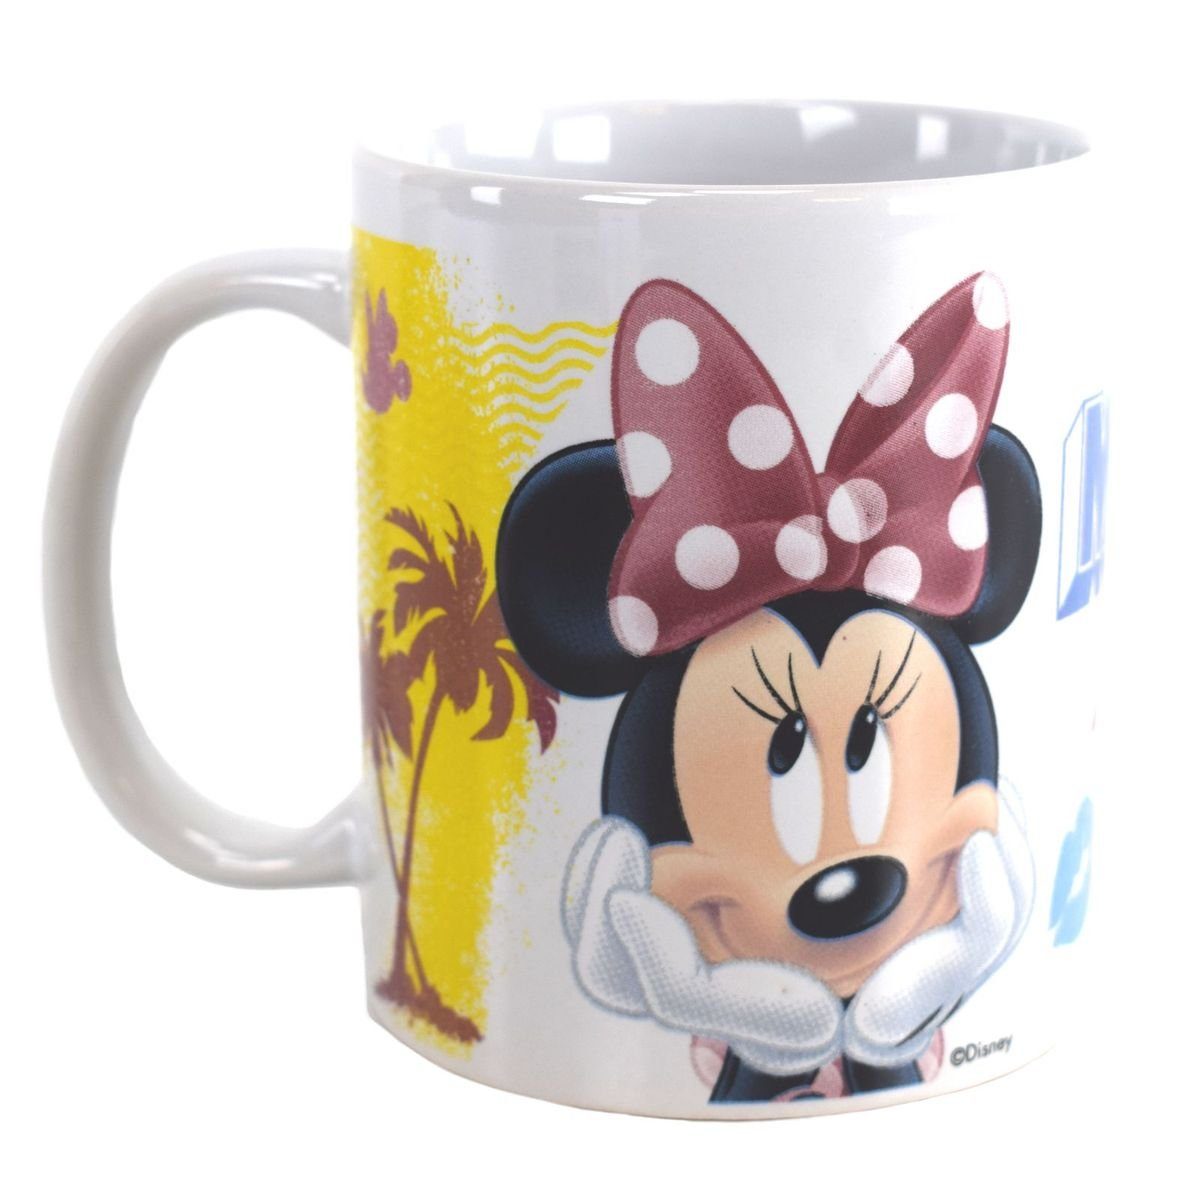 Disney Minnie Mouse Stor Geschenkkarton Kindertasse, 325 ca. Keramik, Tasse Tasse Mouse Minnie authentisches Design Motiv ml in mit